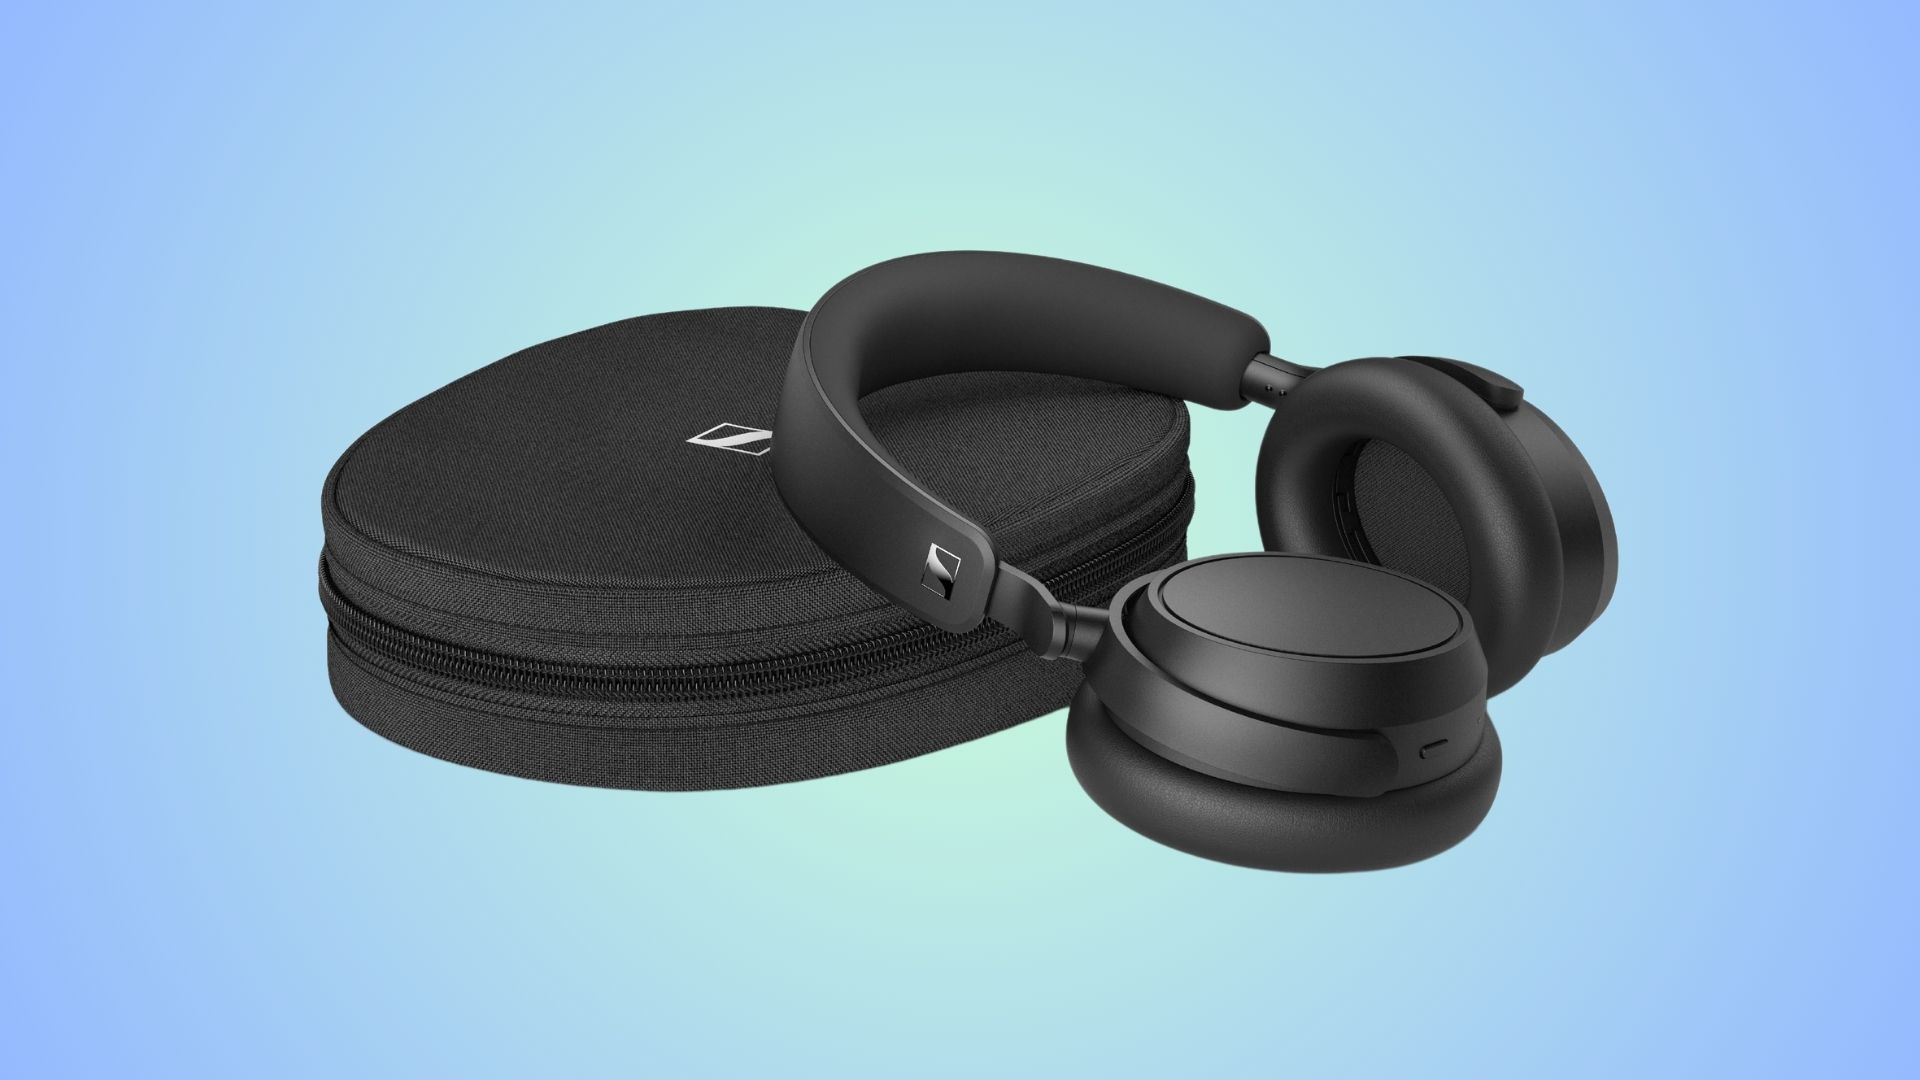 The Sennheiser Accentum Plus headphones in black